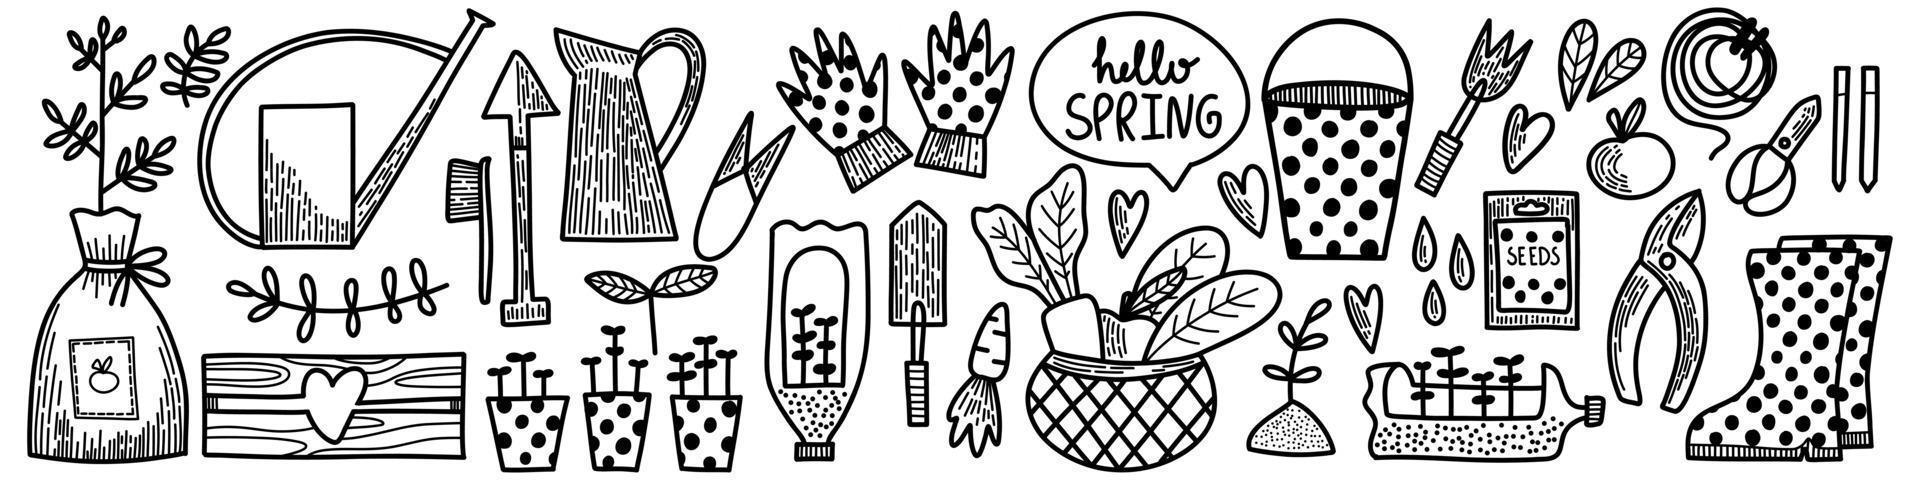 vector set elementen. lente zomer tuinieren collectie in doodle handgetekende stijl. apparatuur voor het kweken van planten gieter, laarzen, zaden, handschoenen, groenten, zaailingen. natuur, tuin